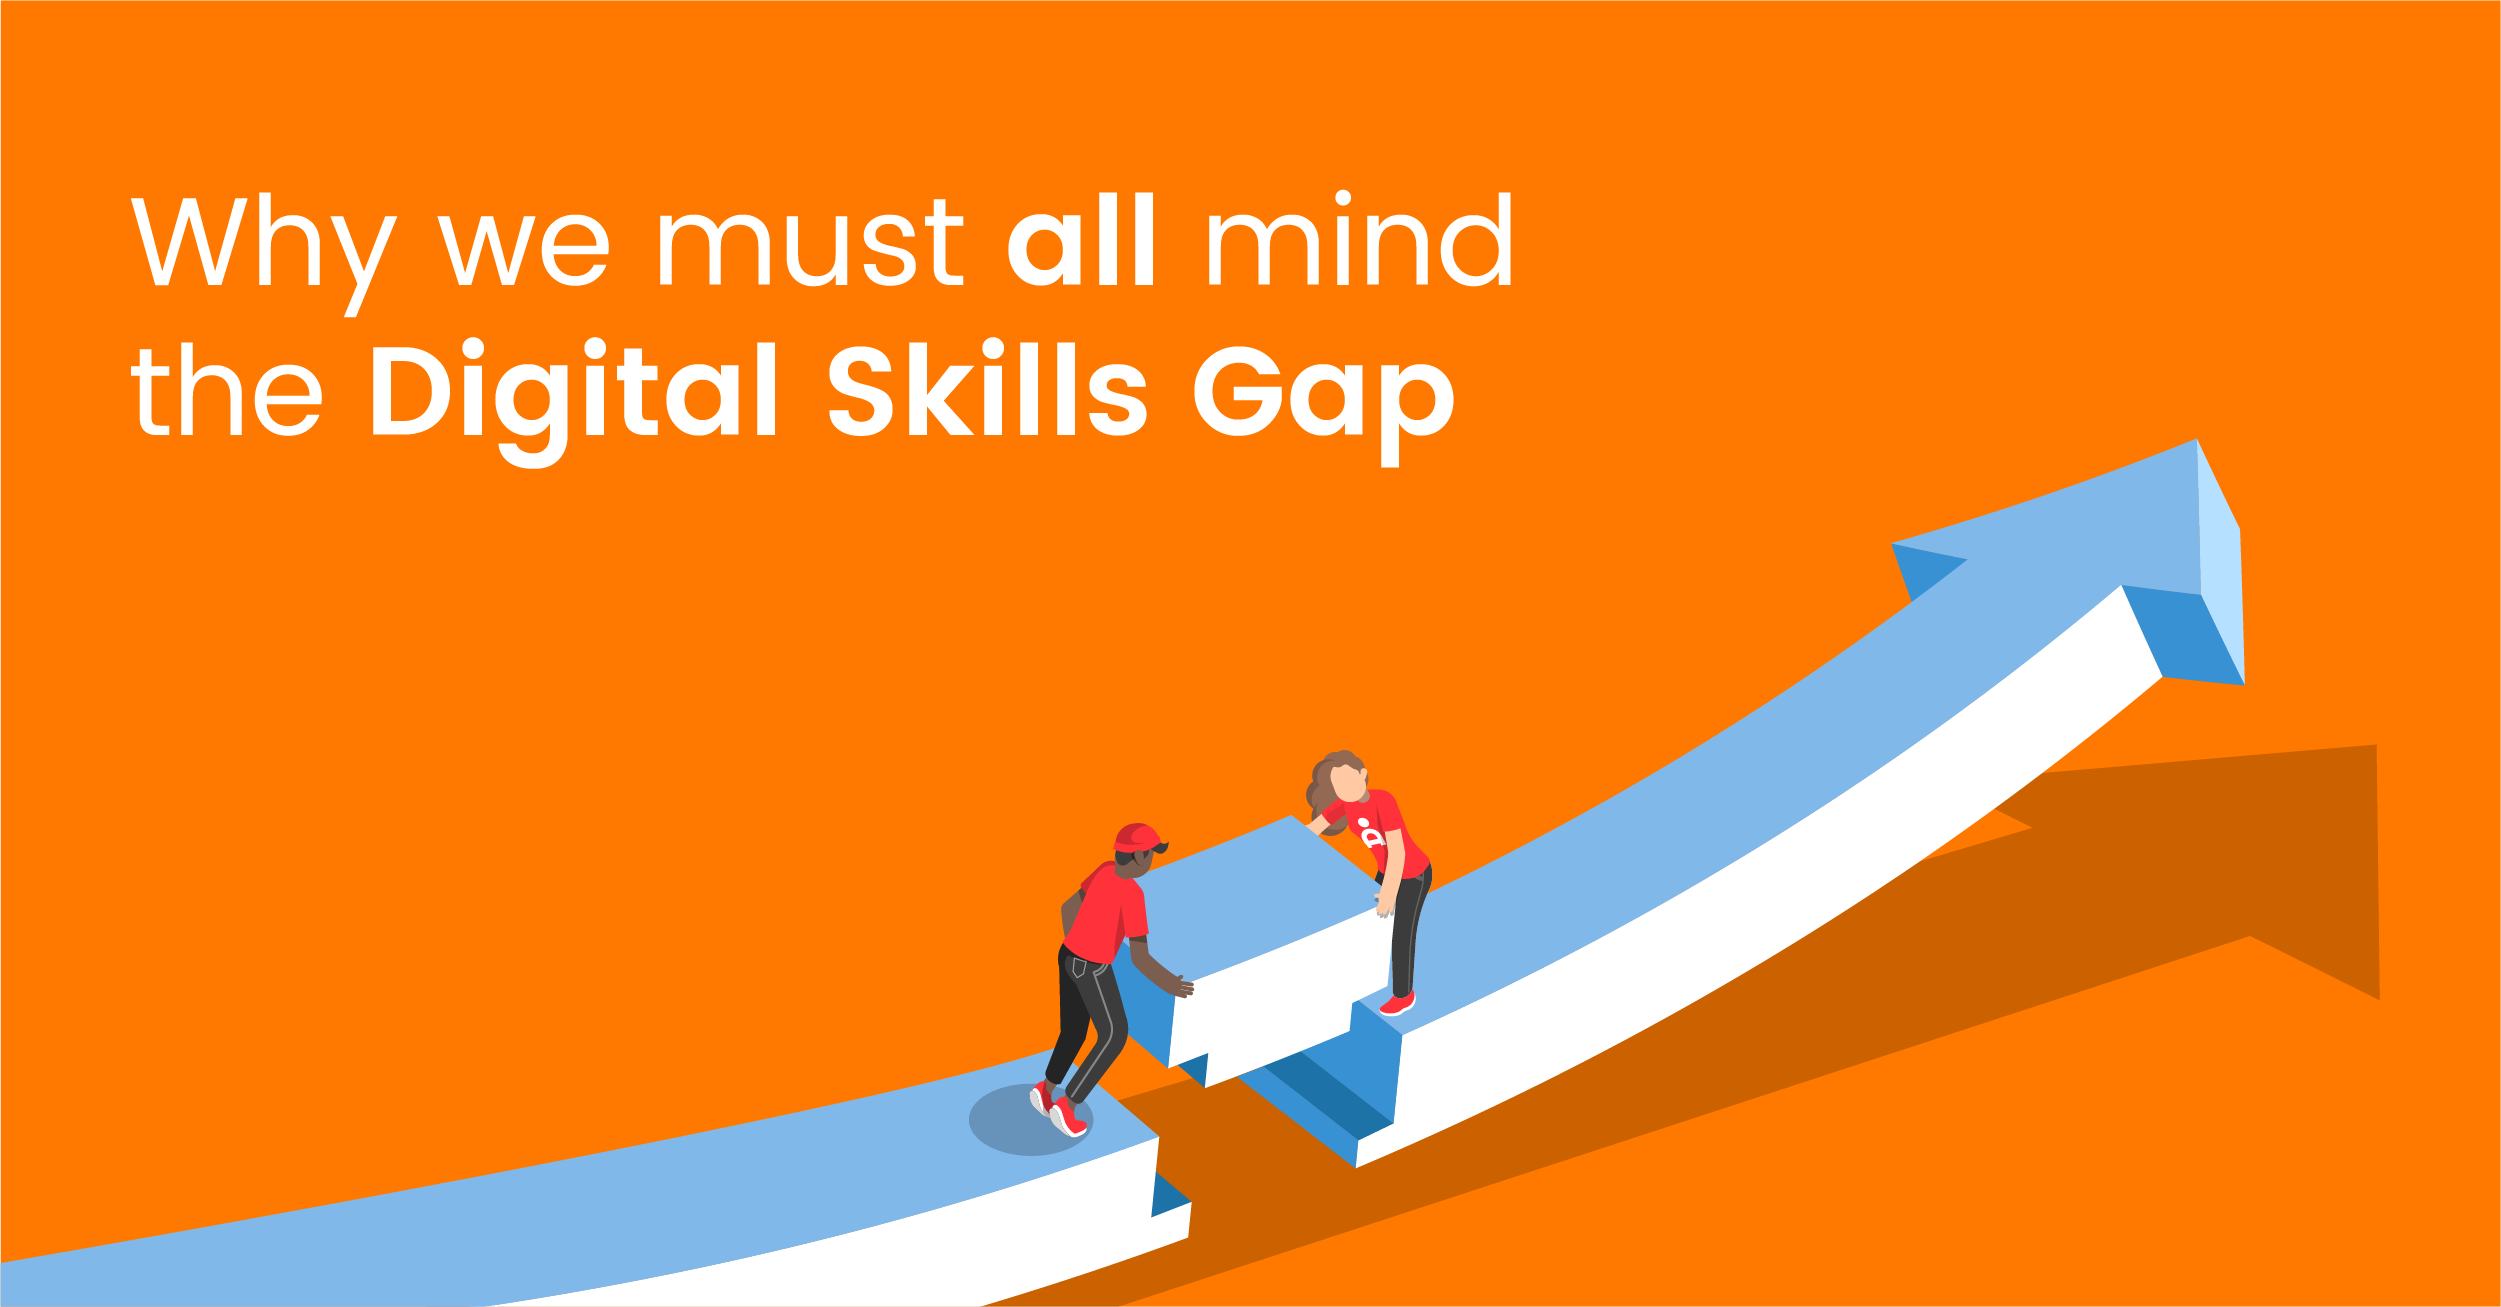 London Digital Skills Gap Panel Debates